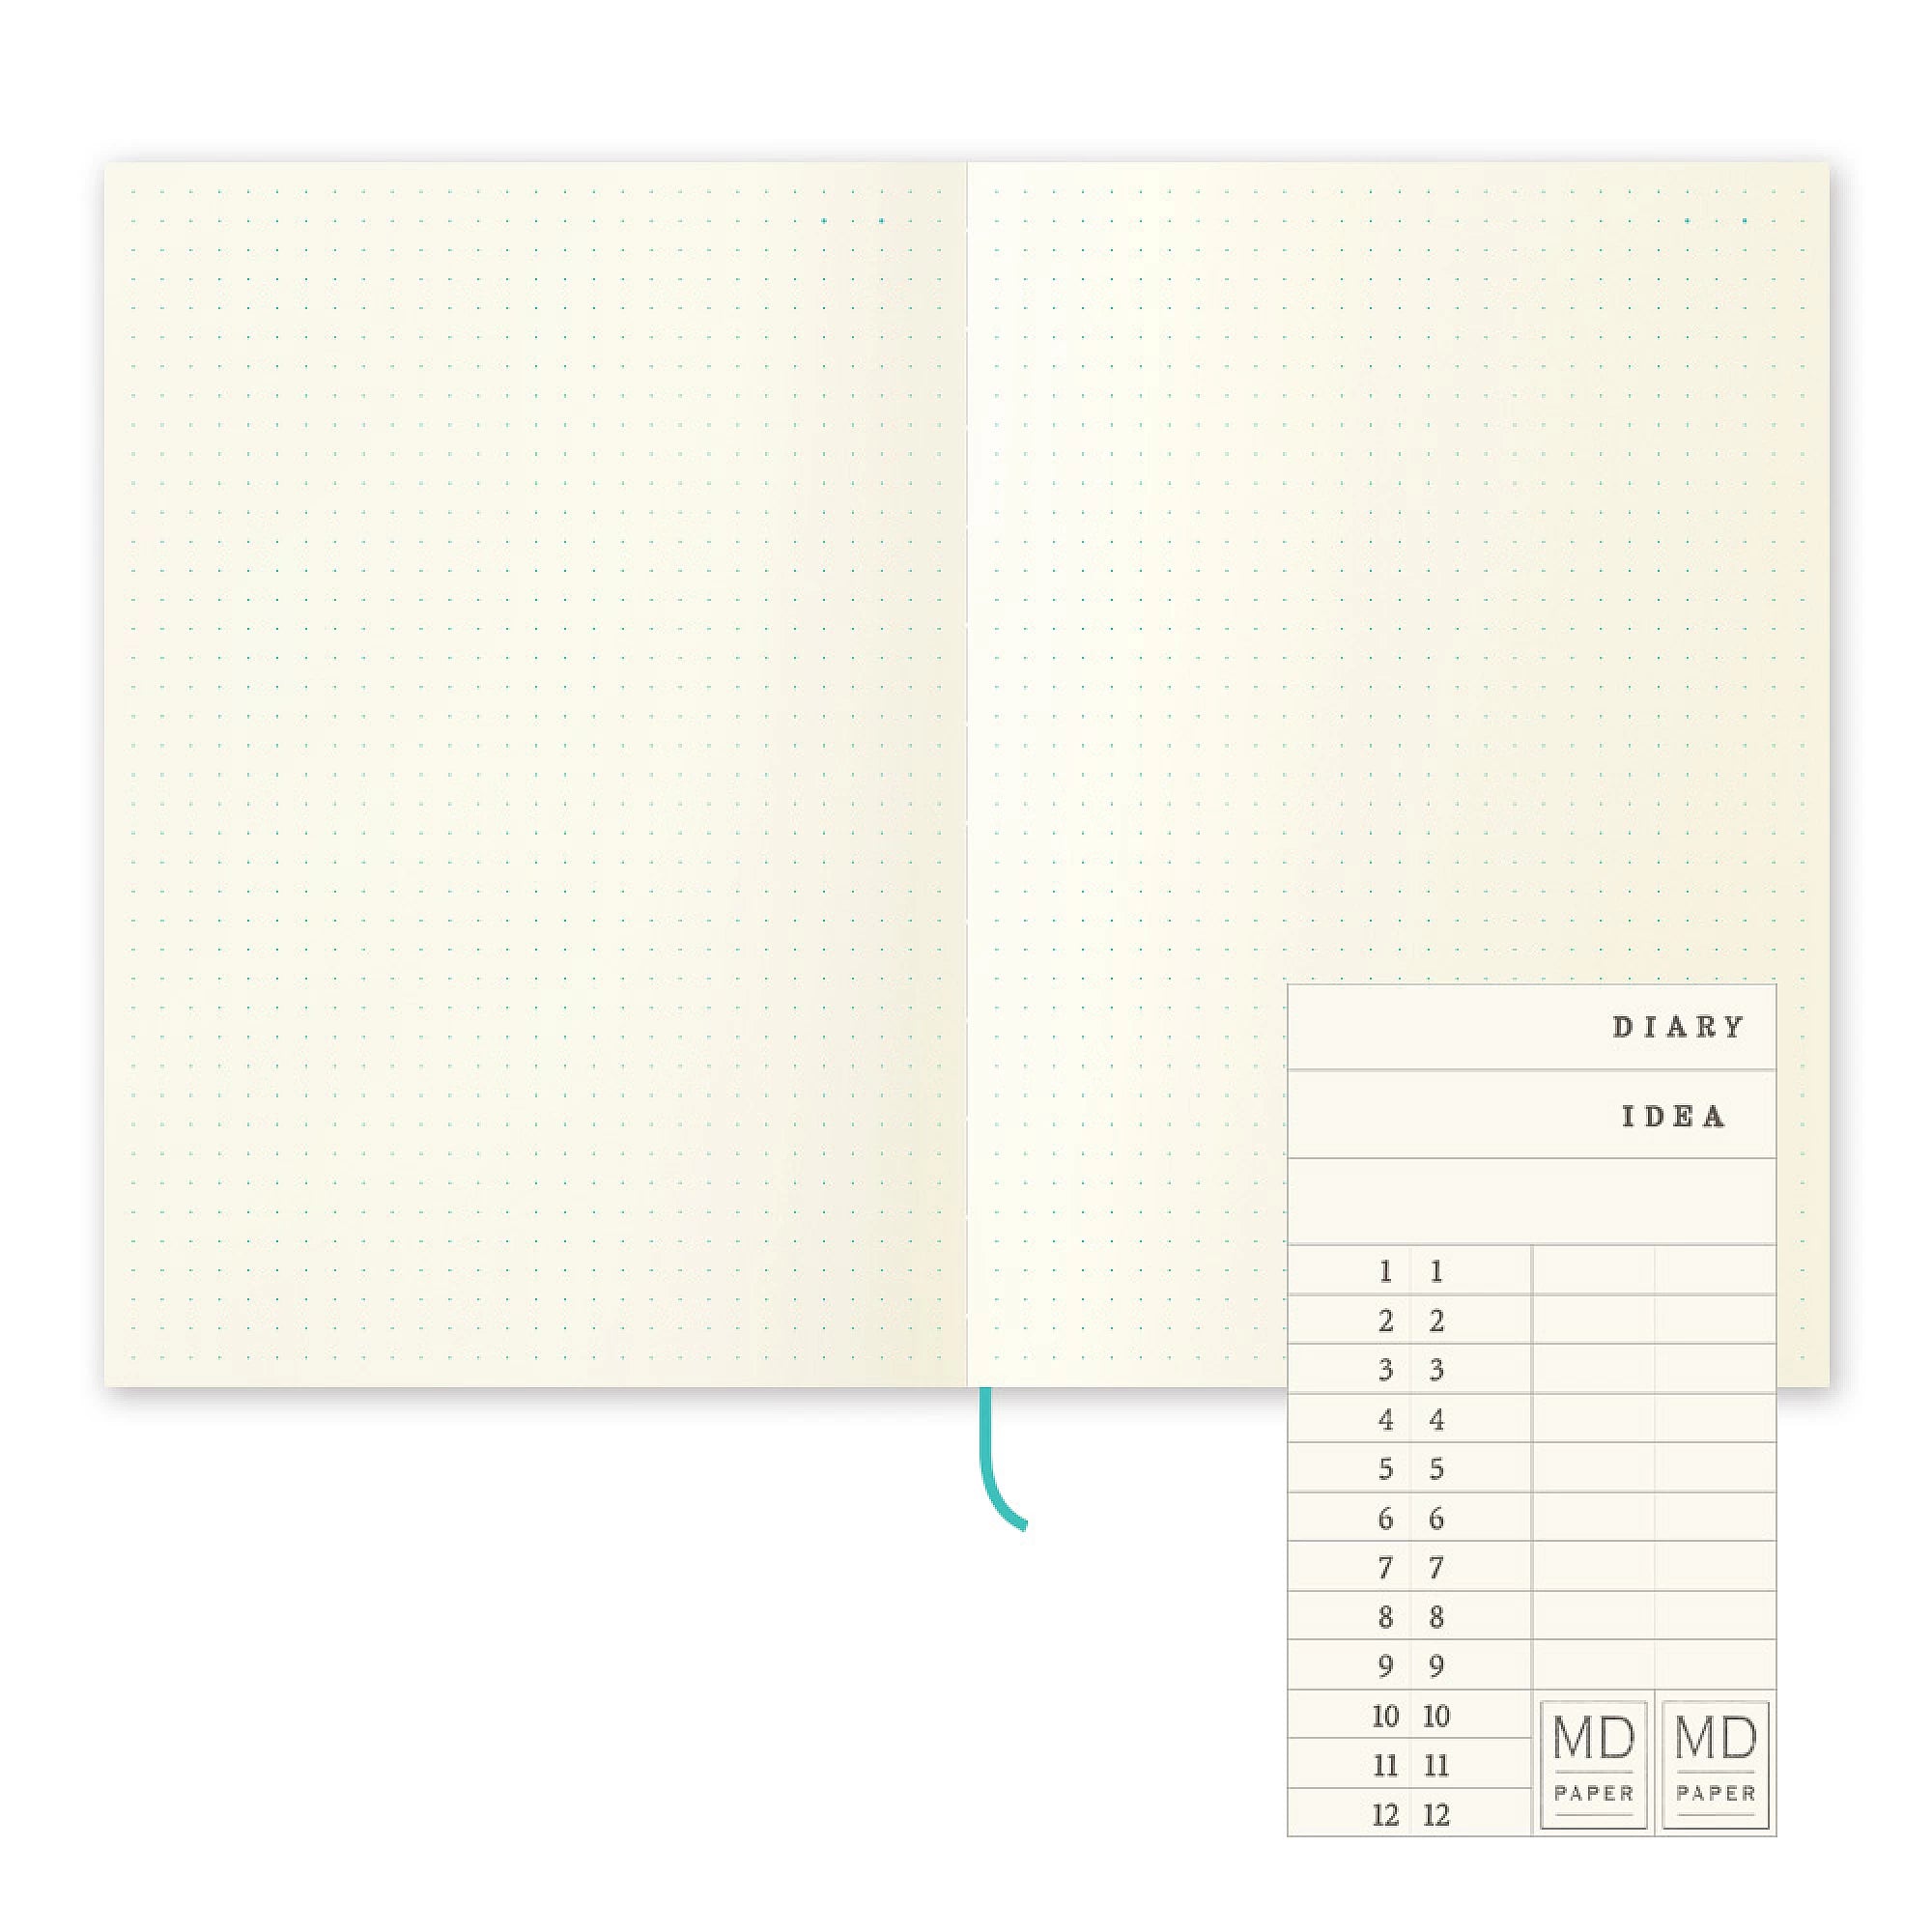 MD Notebook / A5 Dot Grid / Notebook Journal